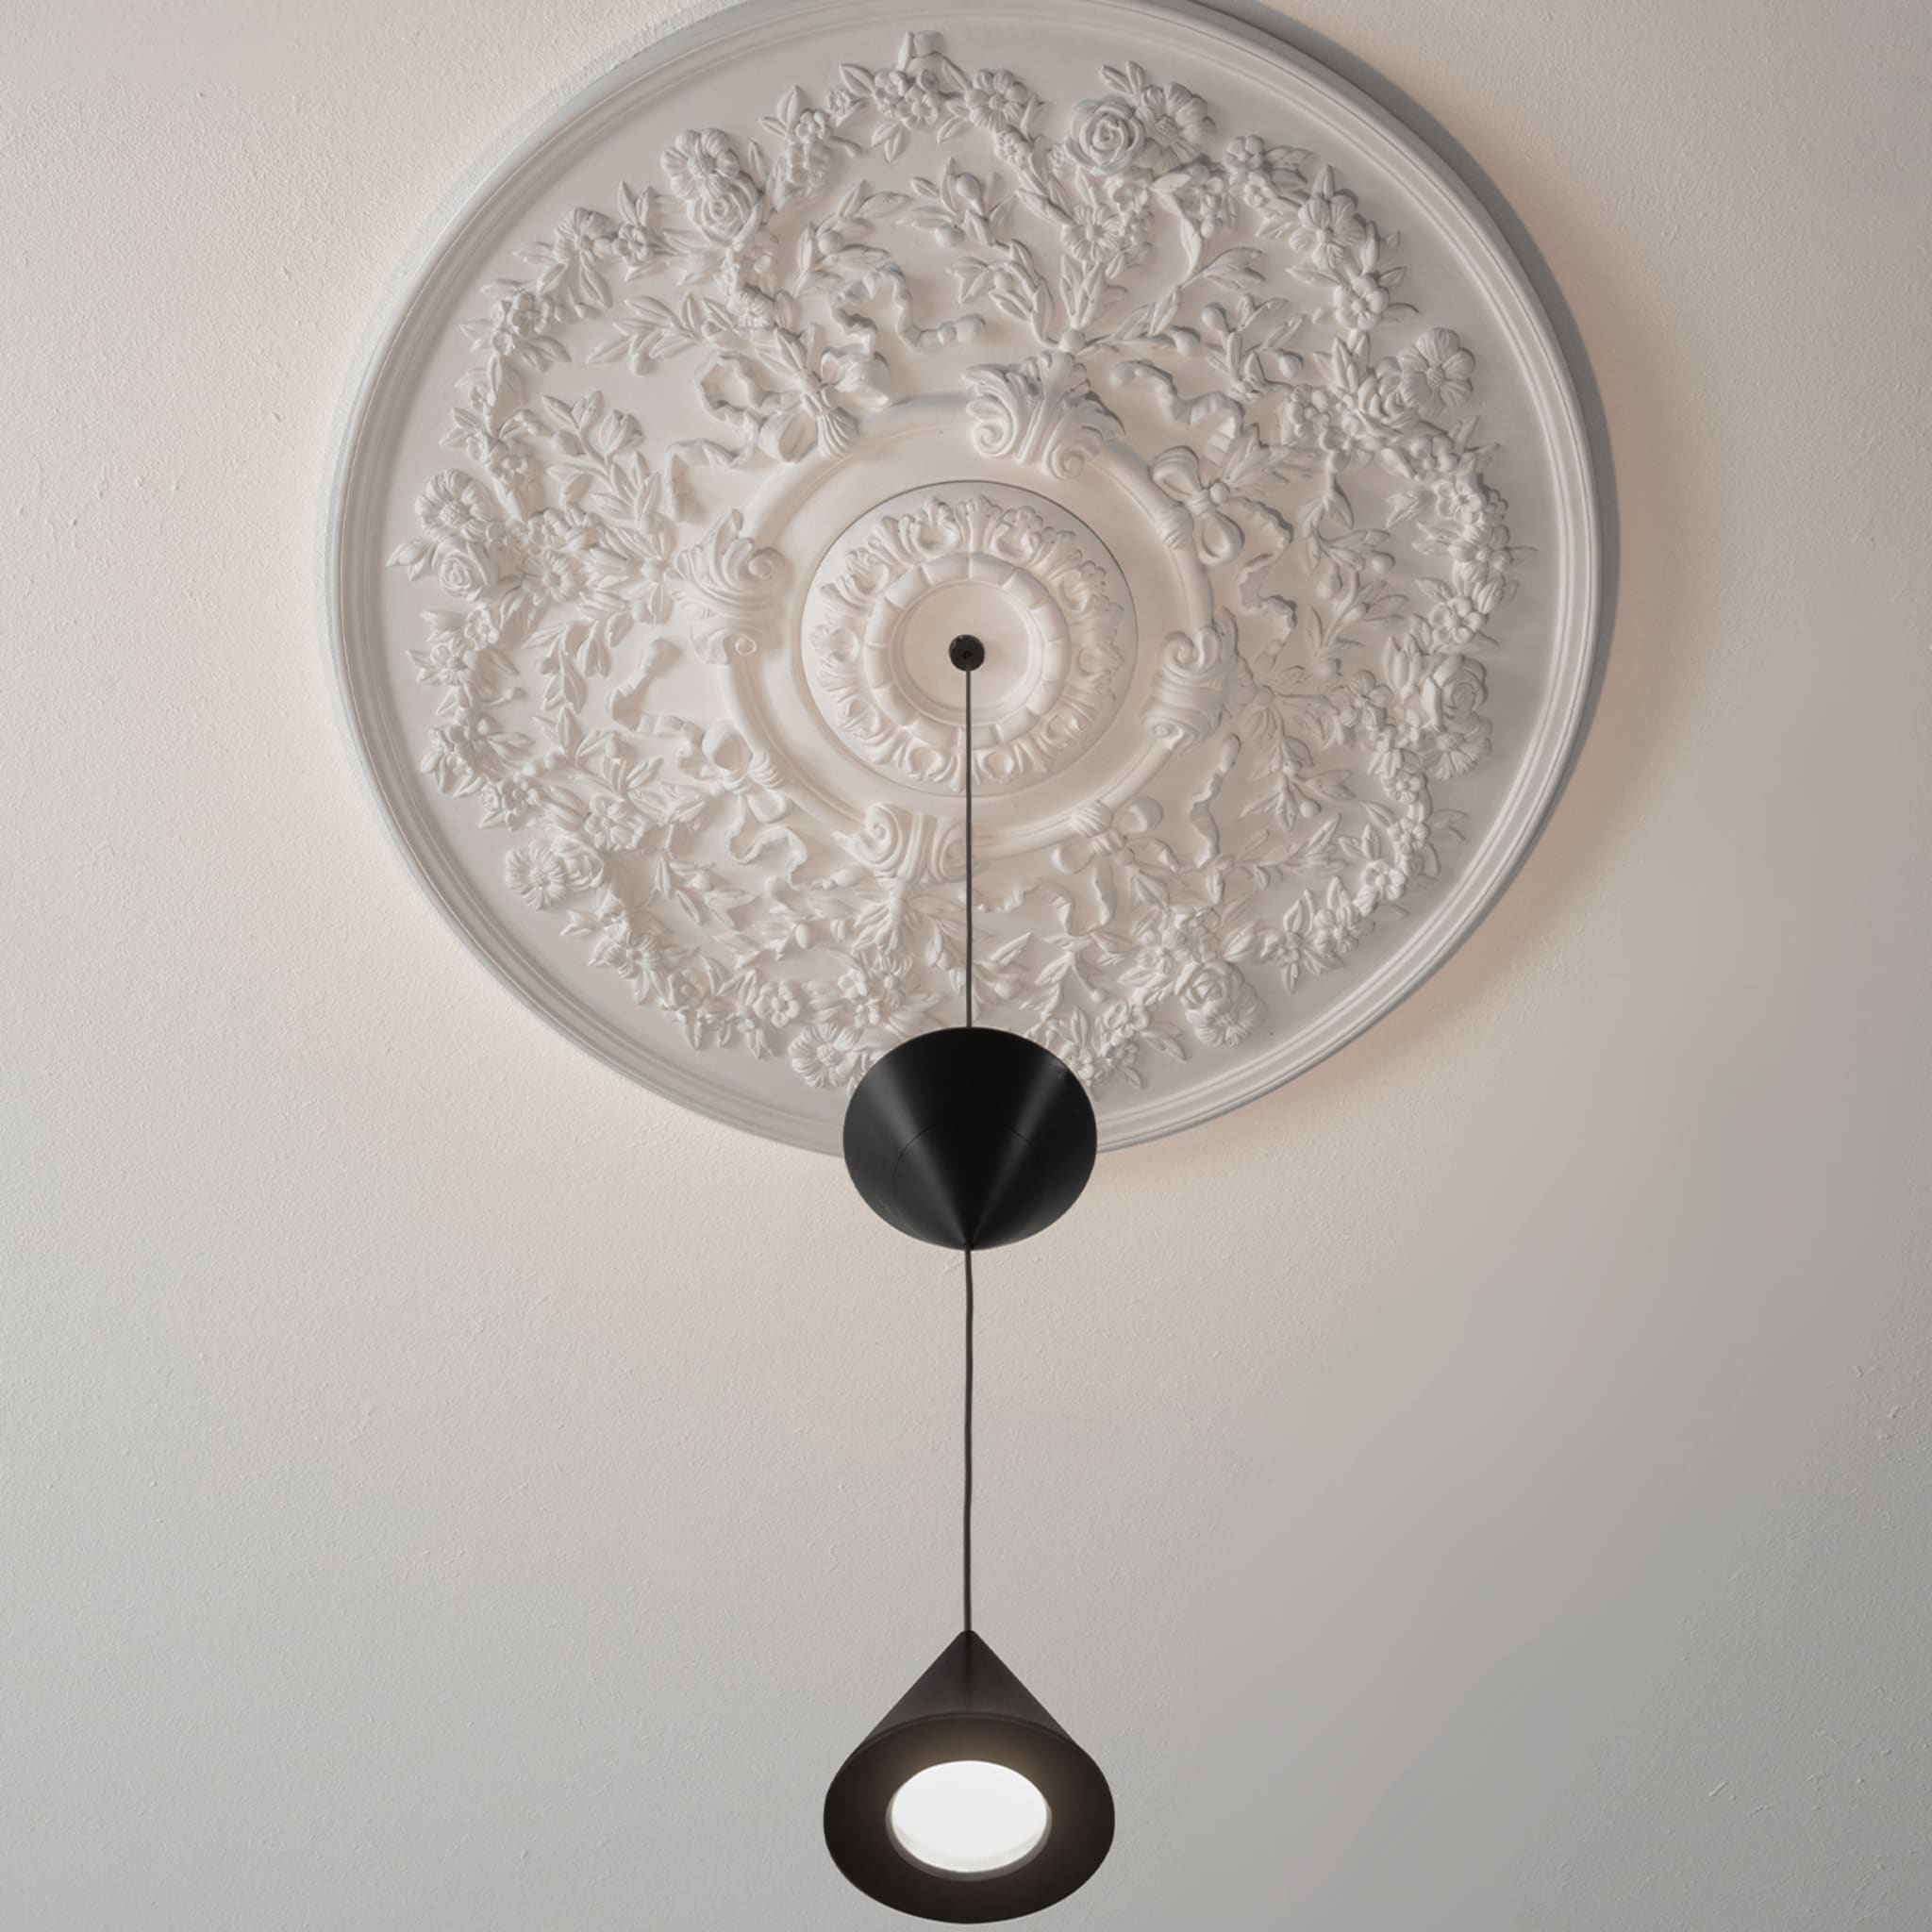 Moonbloom 2-leuchtende hängelampe by Matteo Ugolini - Alternative Ansicht 2